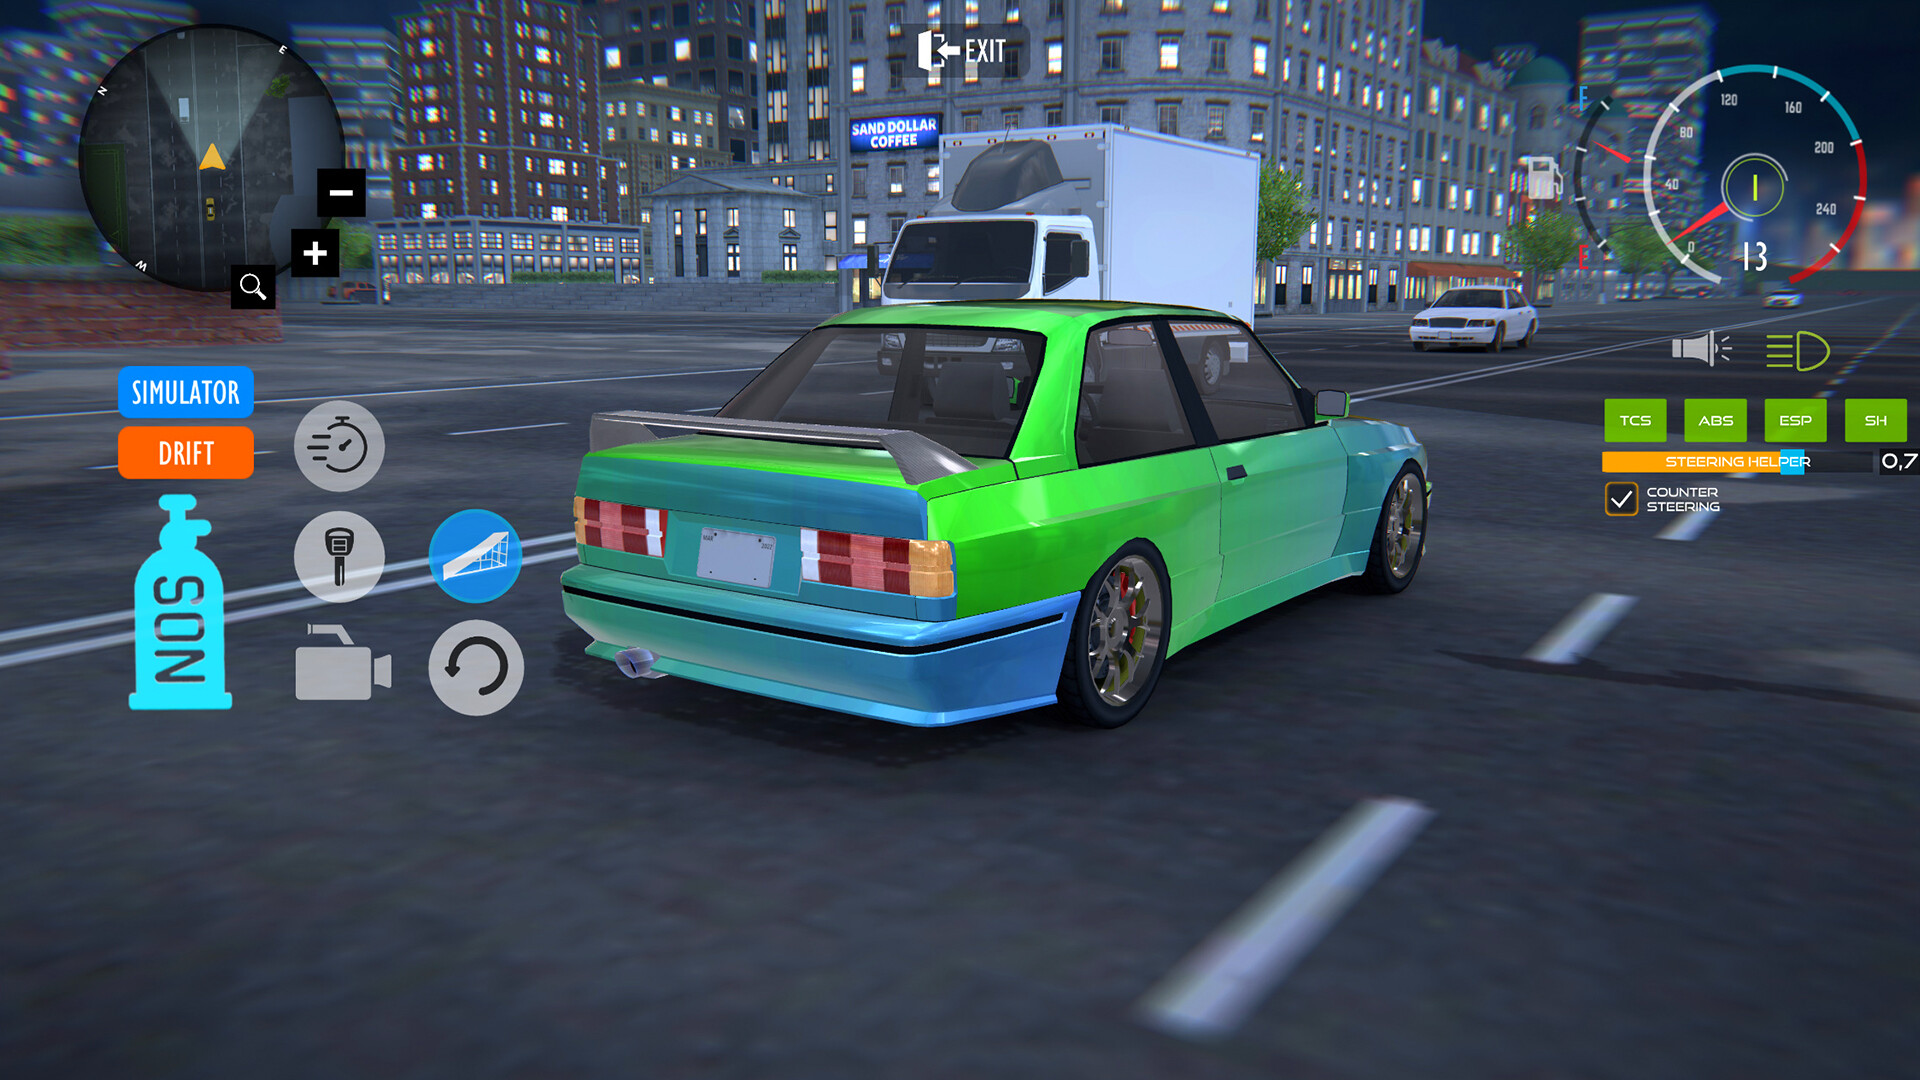 E30 Drift Car Simulator on Steam